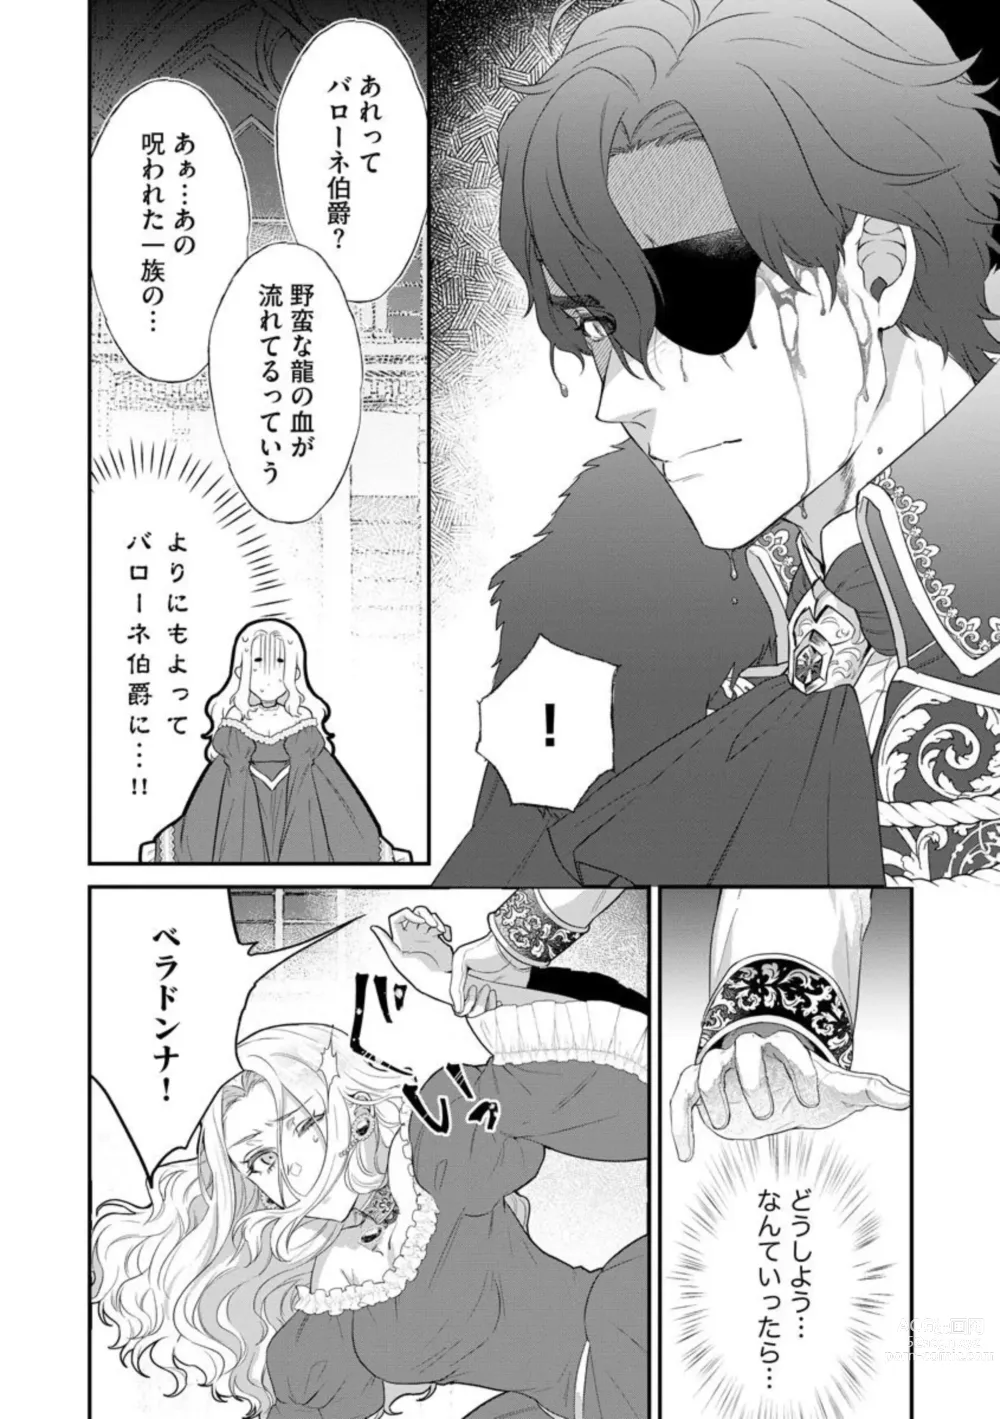 Page 12 of manga Kaibutsu Hakushaku no Amai Hana Akuyaku Reijou wa Bed de Midare Chiru 1